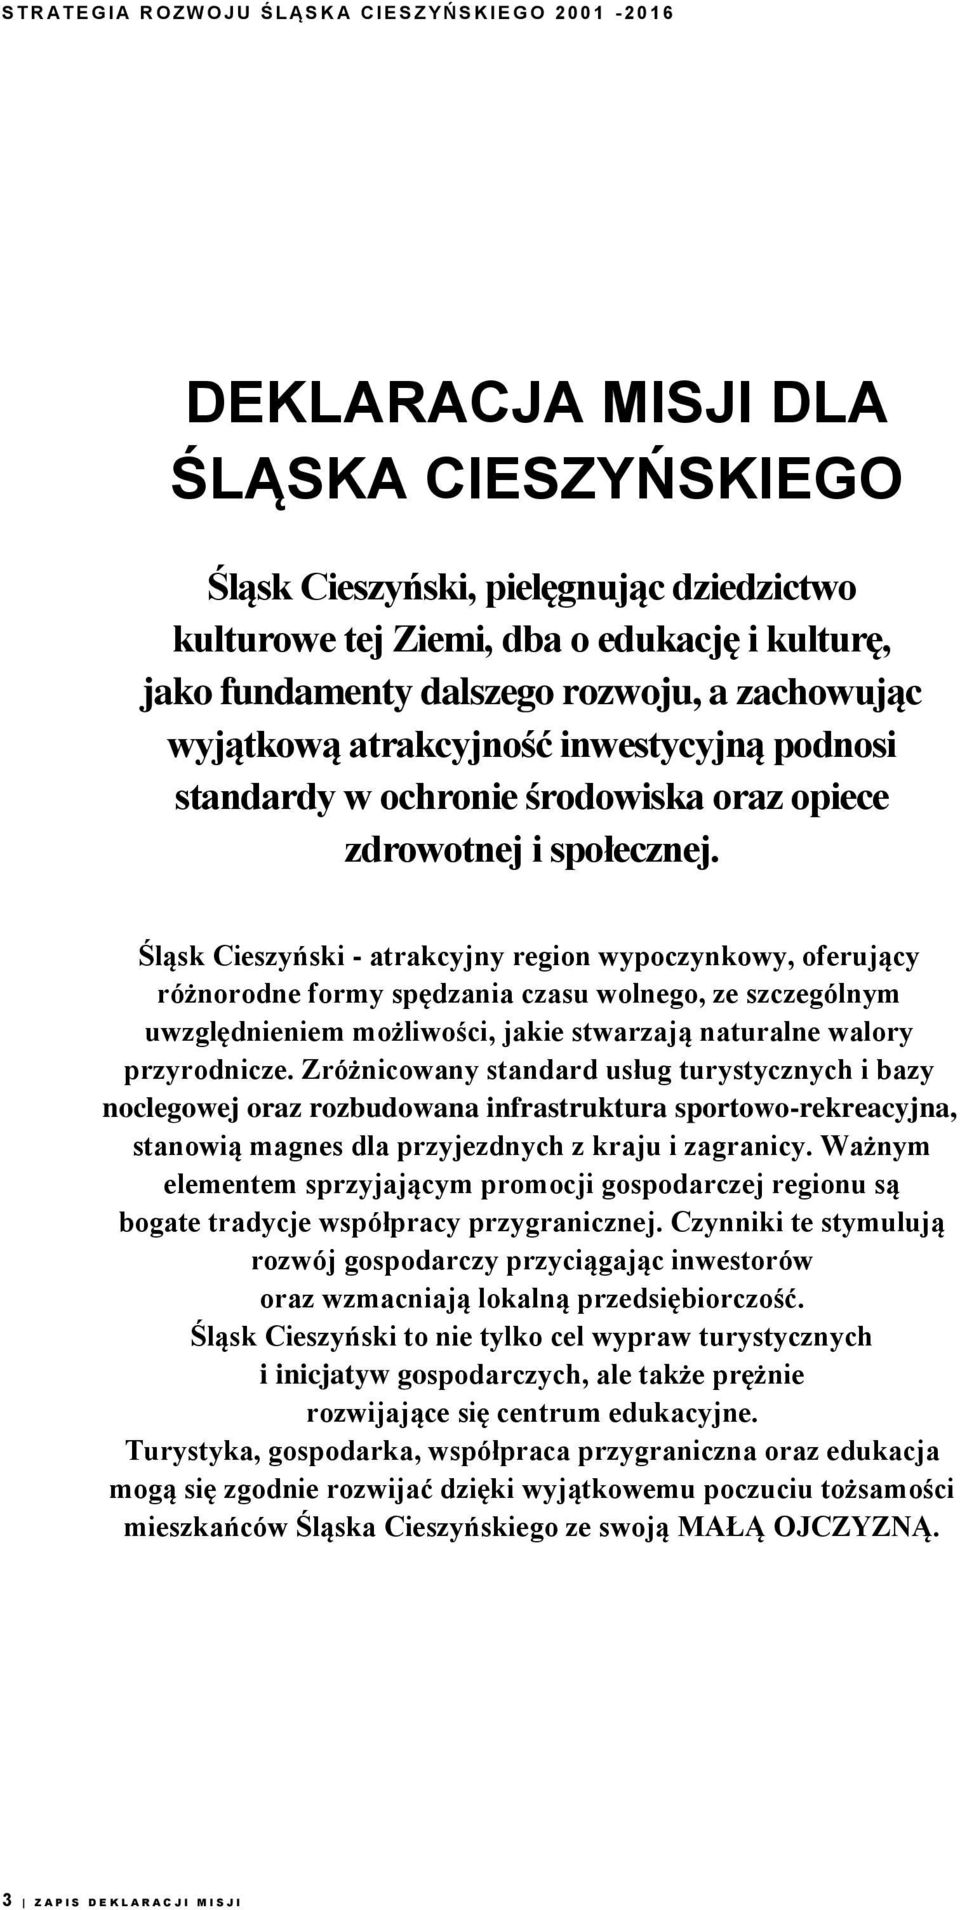 Śląsk Cieszyński - atrakcyjny region wypoczynkowy, oferujący różnorodne formy spędzania czasu wolnego, ze szczególnym uwzględnieniem możliwości, jakie stwarzają naturalne walory przyrodnicze.